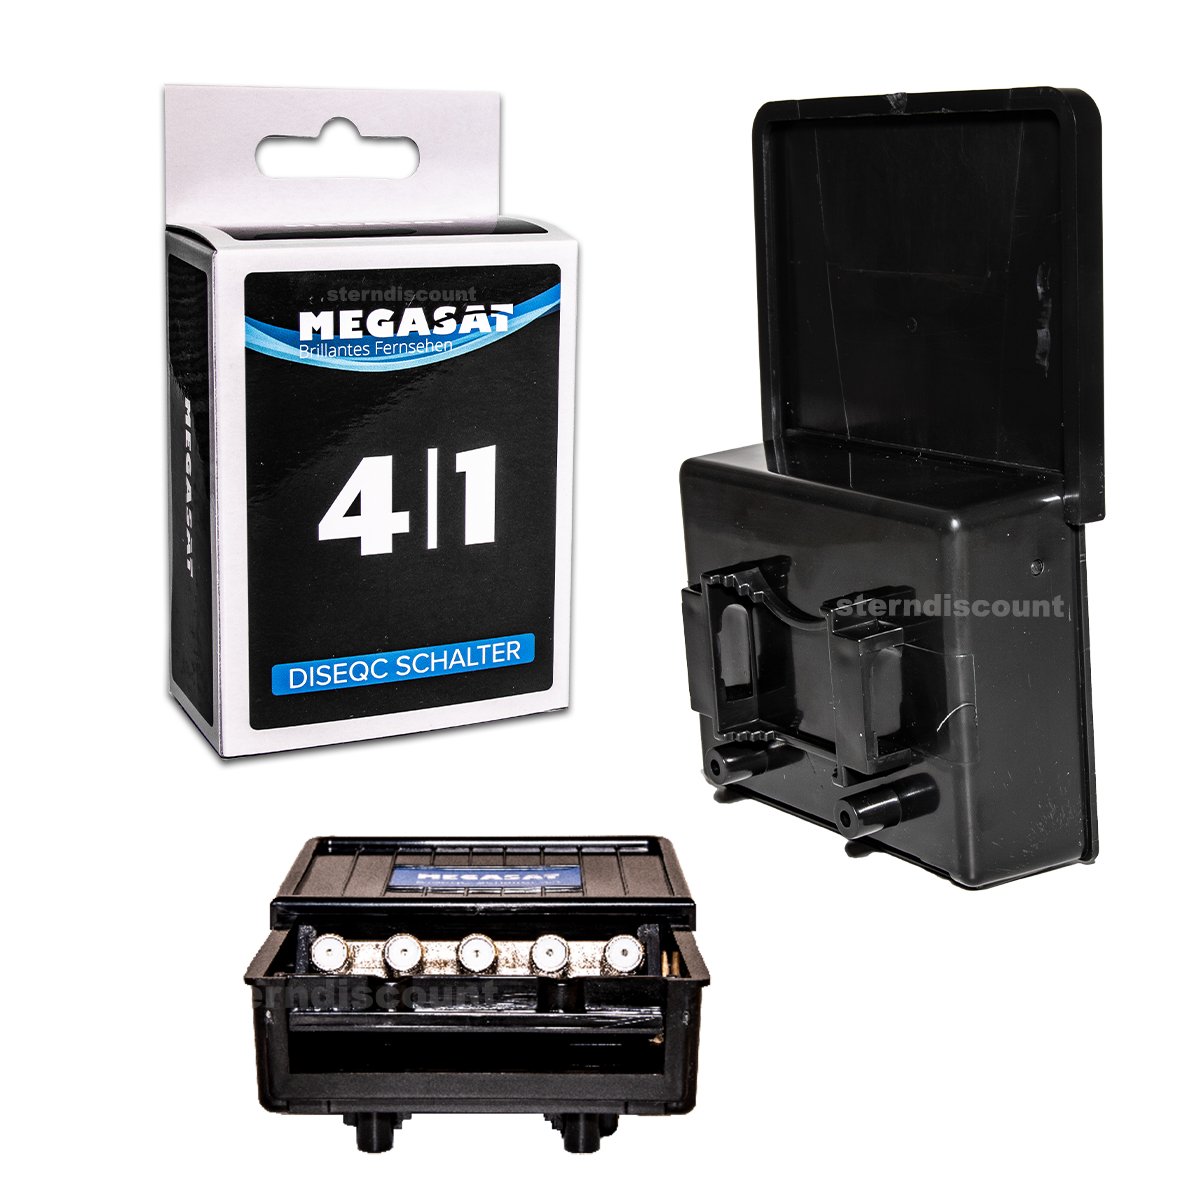 Megasat DiSeqC Schalter 4-1 Pro mit all seitlich